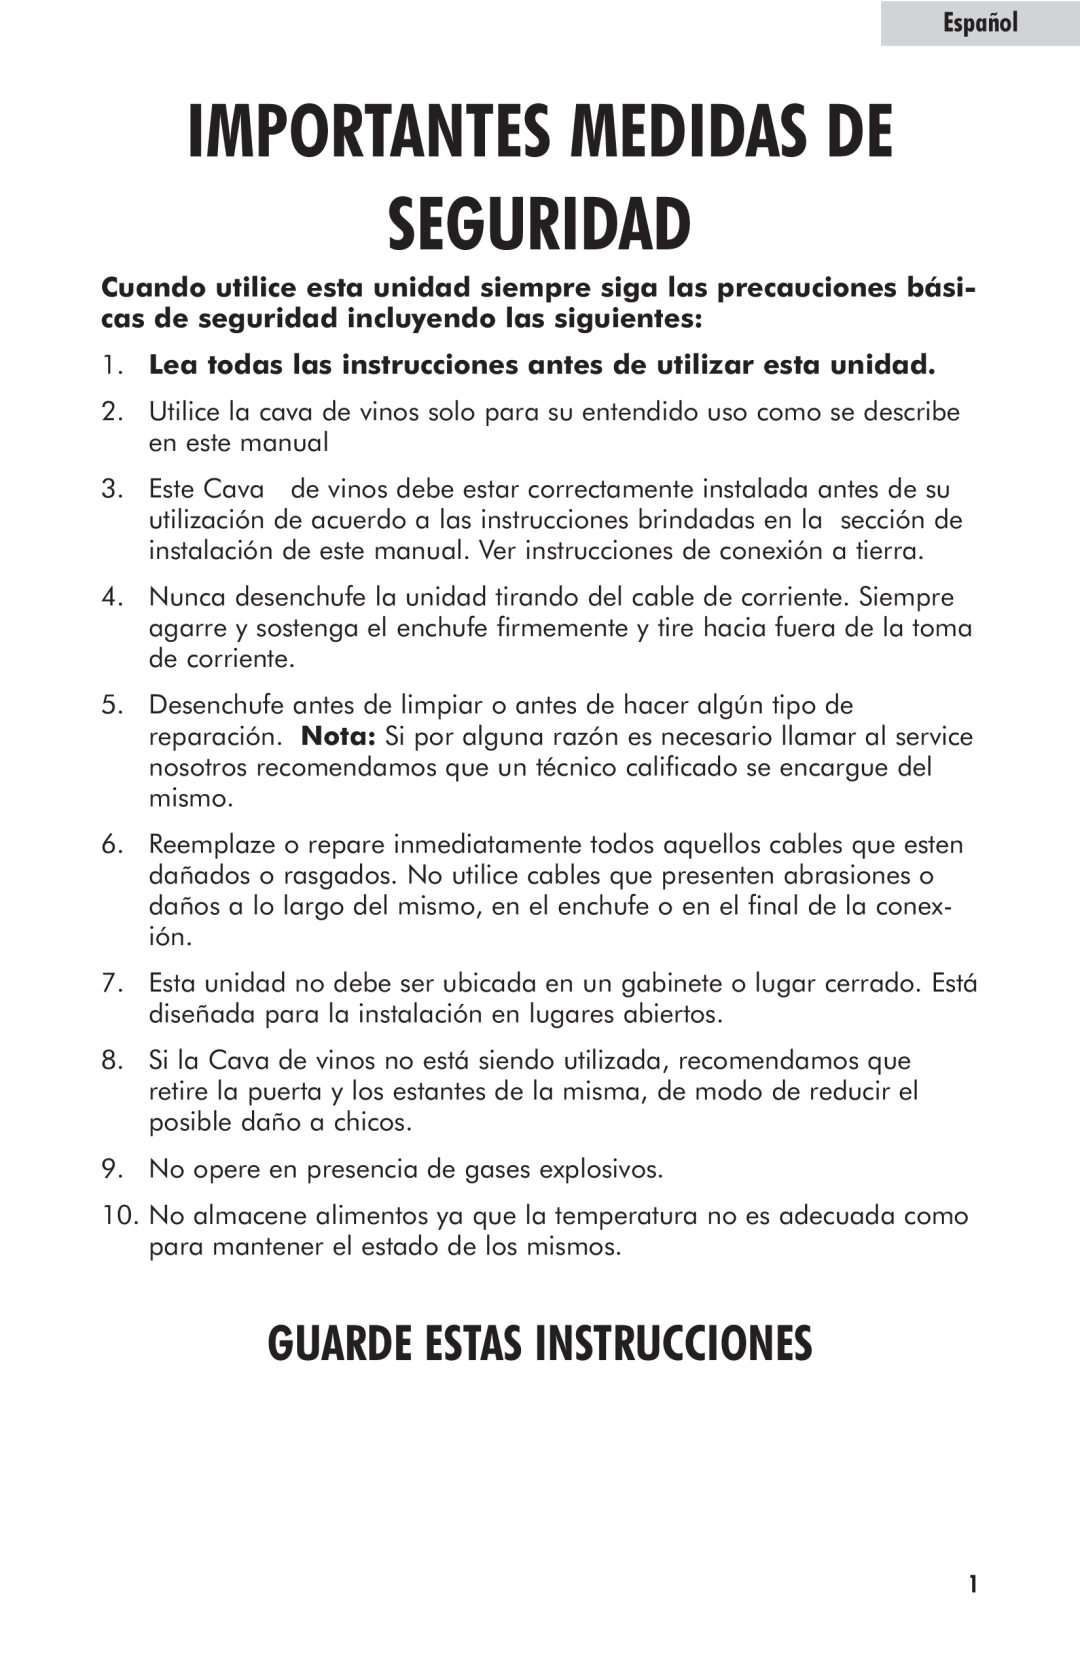 Haier HVFM24B user manual Seguridad, Importantes Medidas De, Guarde Estas Instrucciones, Español 